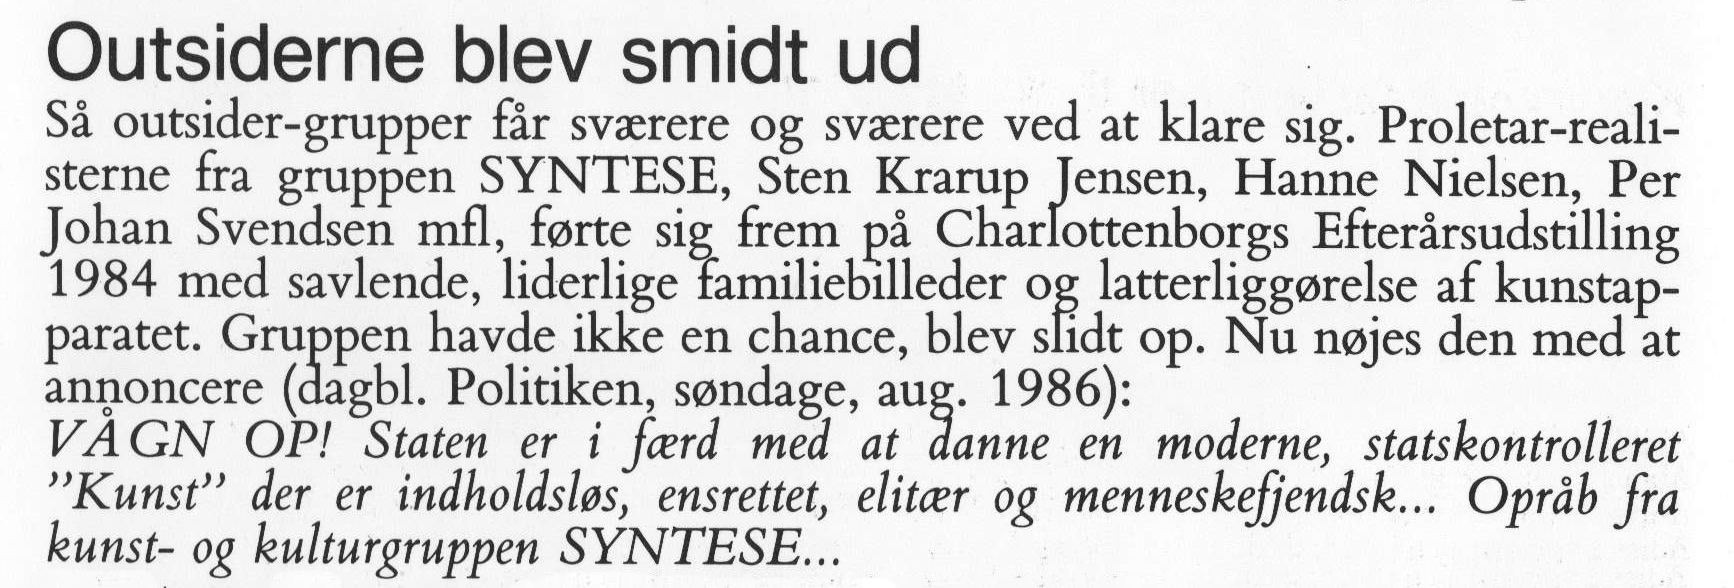 Outsiderne blev smidt ud. Omtale (Modernisme I Dansk Malerkunst. Jens Jørgen Thorsen.1987 Forlaget Palle Fogtdal) Medio marts 1987.